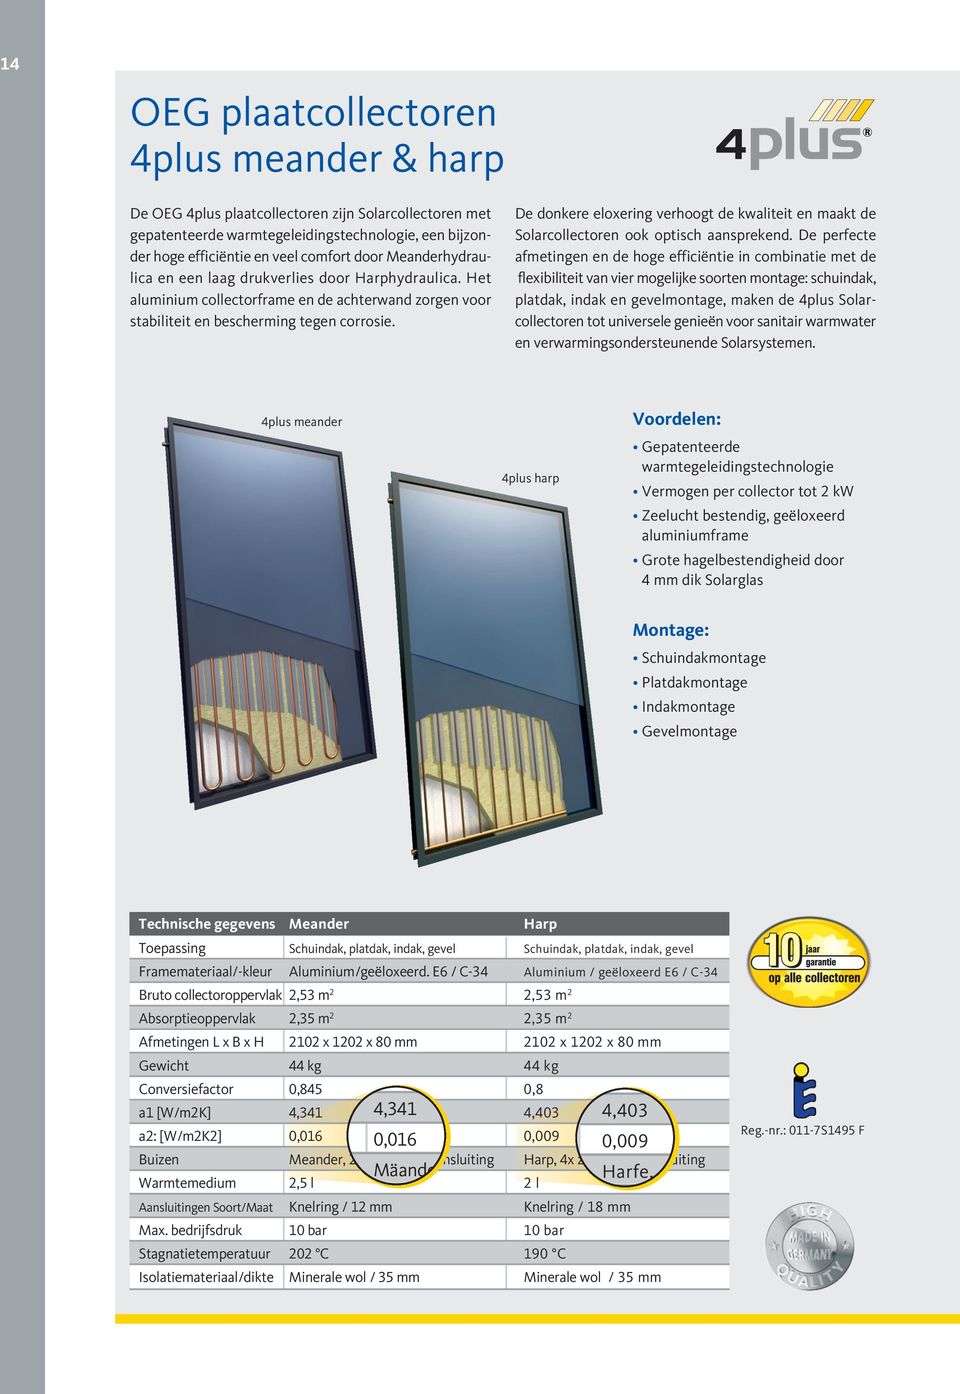 De donkere eloxering verhoogt de kwaliteit en maakt de Solarcollectoren ook optisch aansprekend.